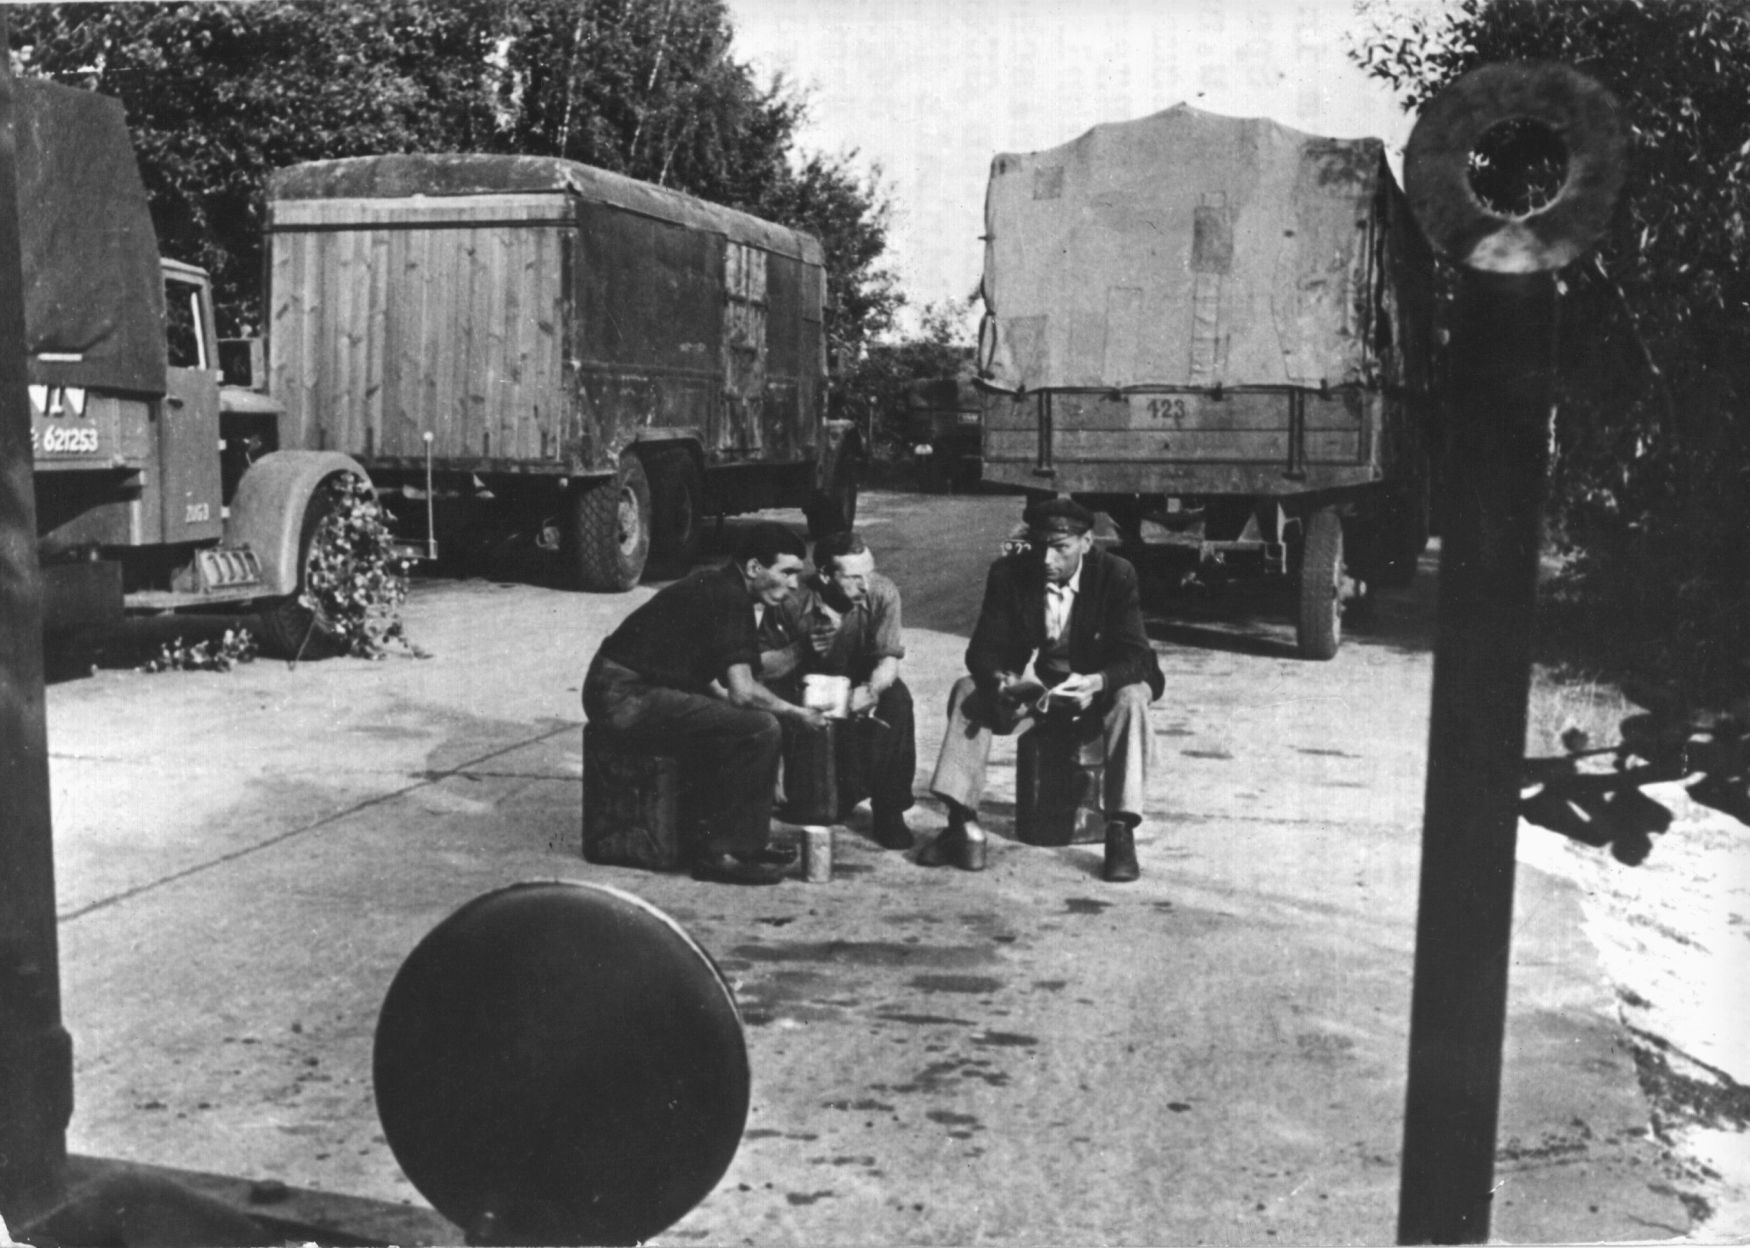 Fotogalerie / Blokáda Berlína 24.6. 1948 / 70. let výročí / ČTK /  20